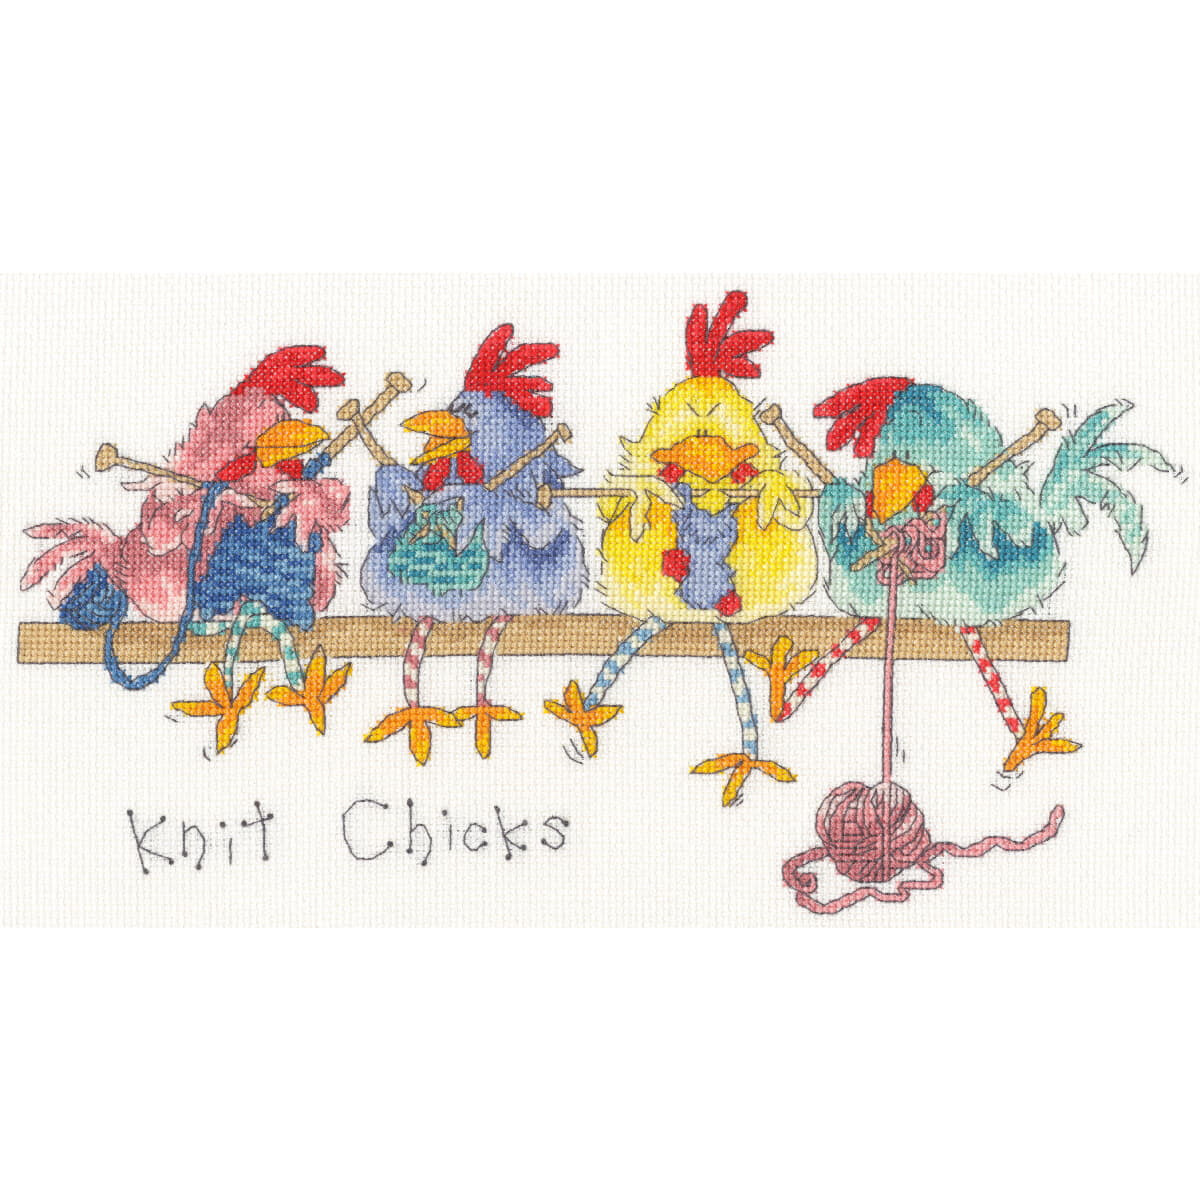 Geïllustreerde afbeelding van vier kleurrijke kippen...